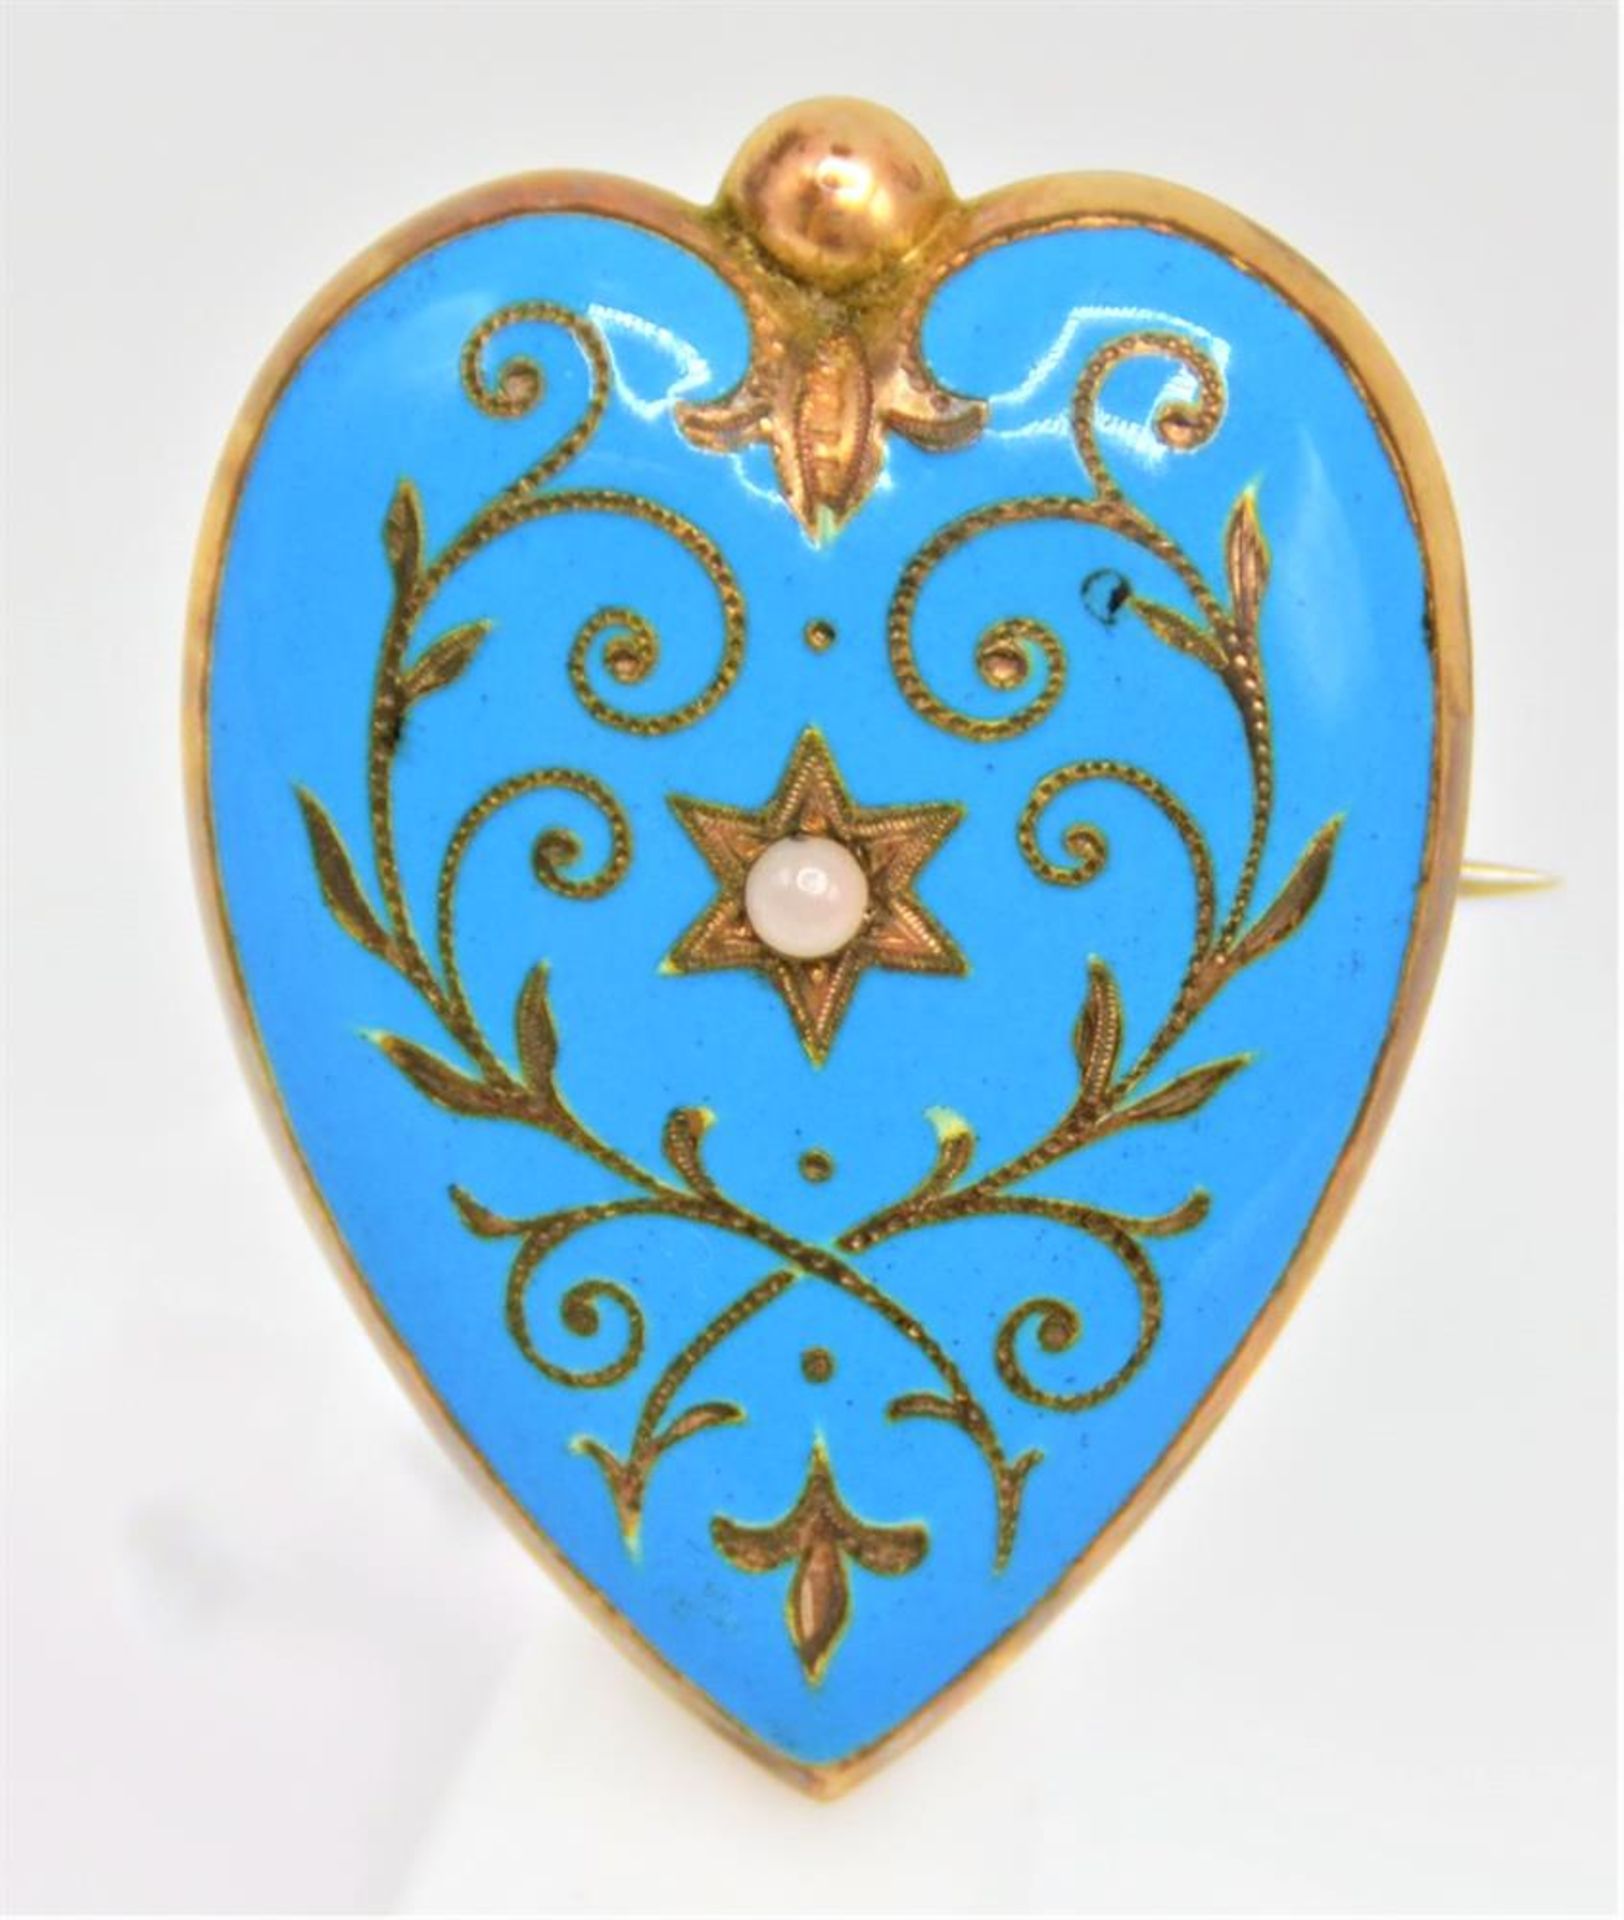 Brosche Anhänger Herzform blau emailliert mit kleiner Perle, vergoldet, Anfang 20 Jhdt., ca. 3,5cm